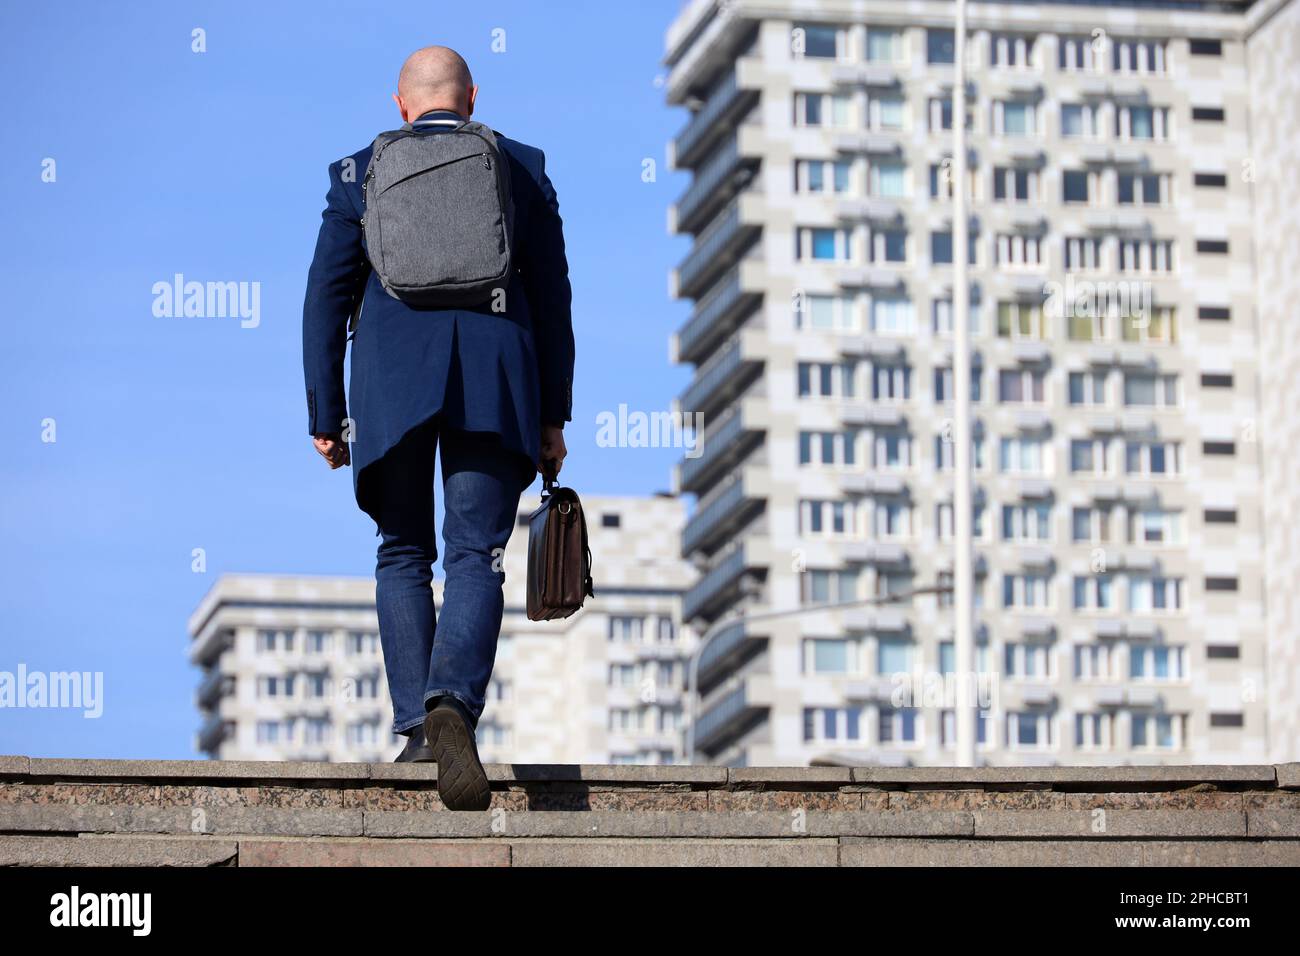 Uomo d'affari con zaino e valigetta in pelle in mano scalando scale in pietra in città. Concetto di carriera, di successo, di spostamento verso l'alto Foto Stock